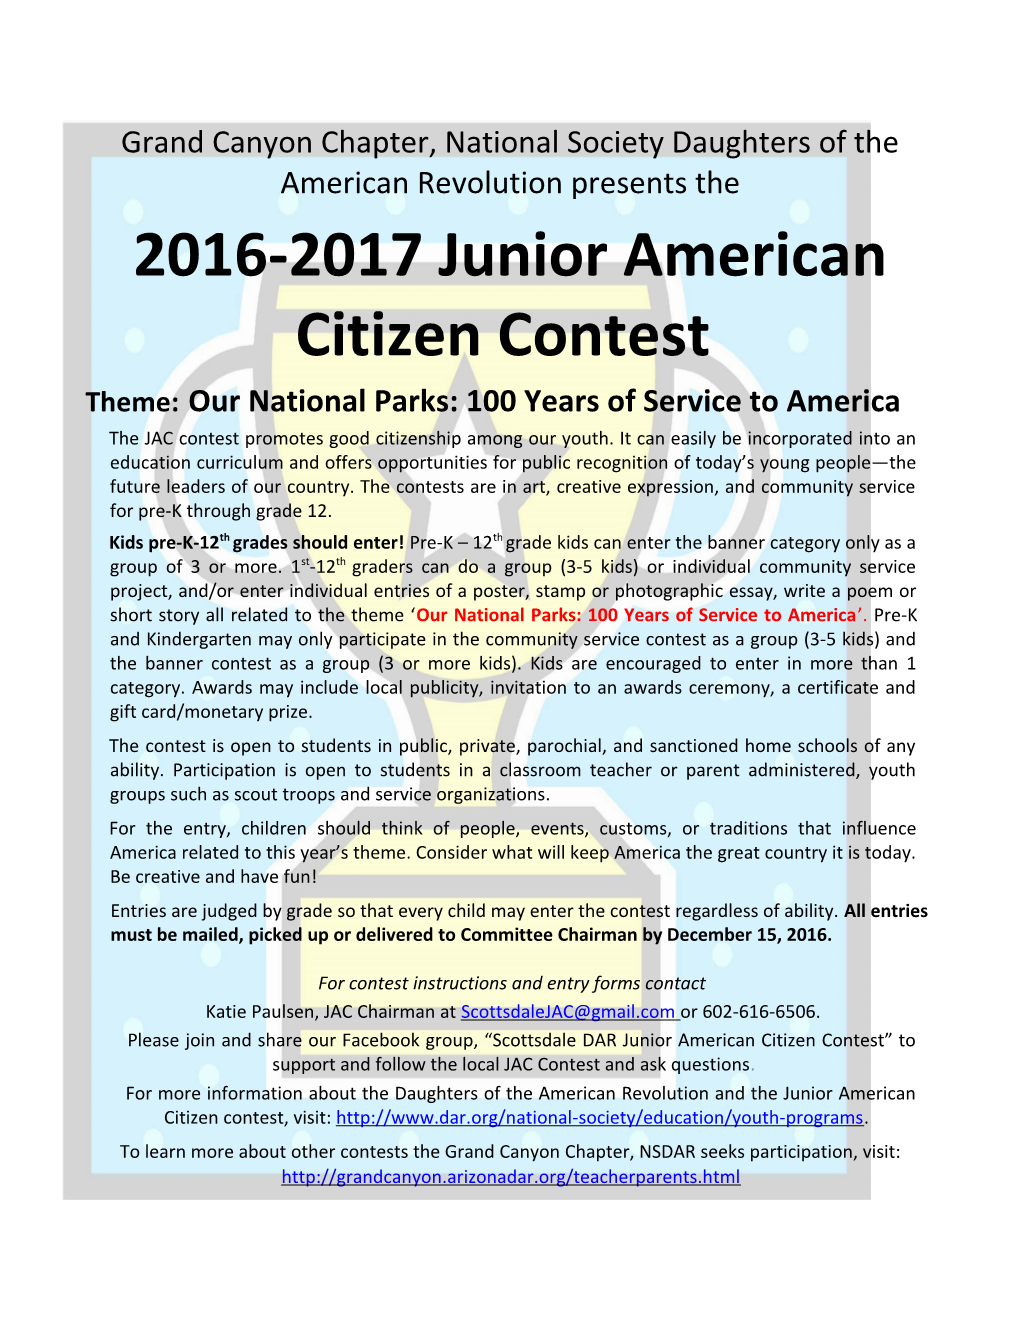 2016-2017 Junior American Citizen Contest